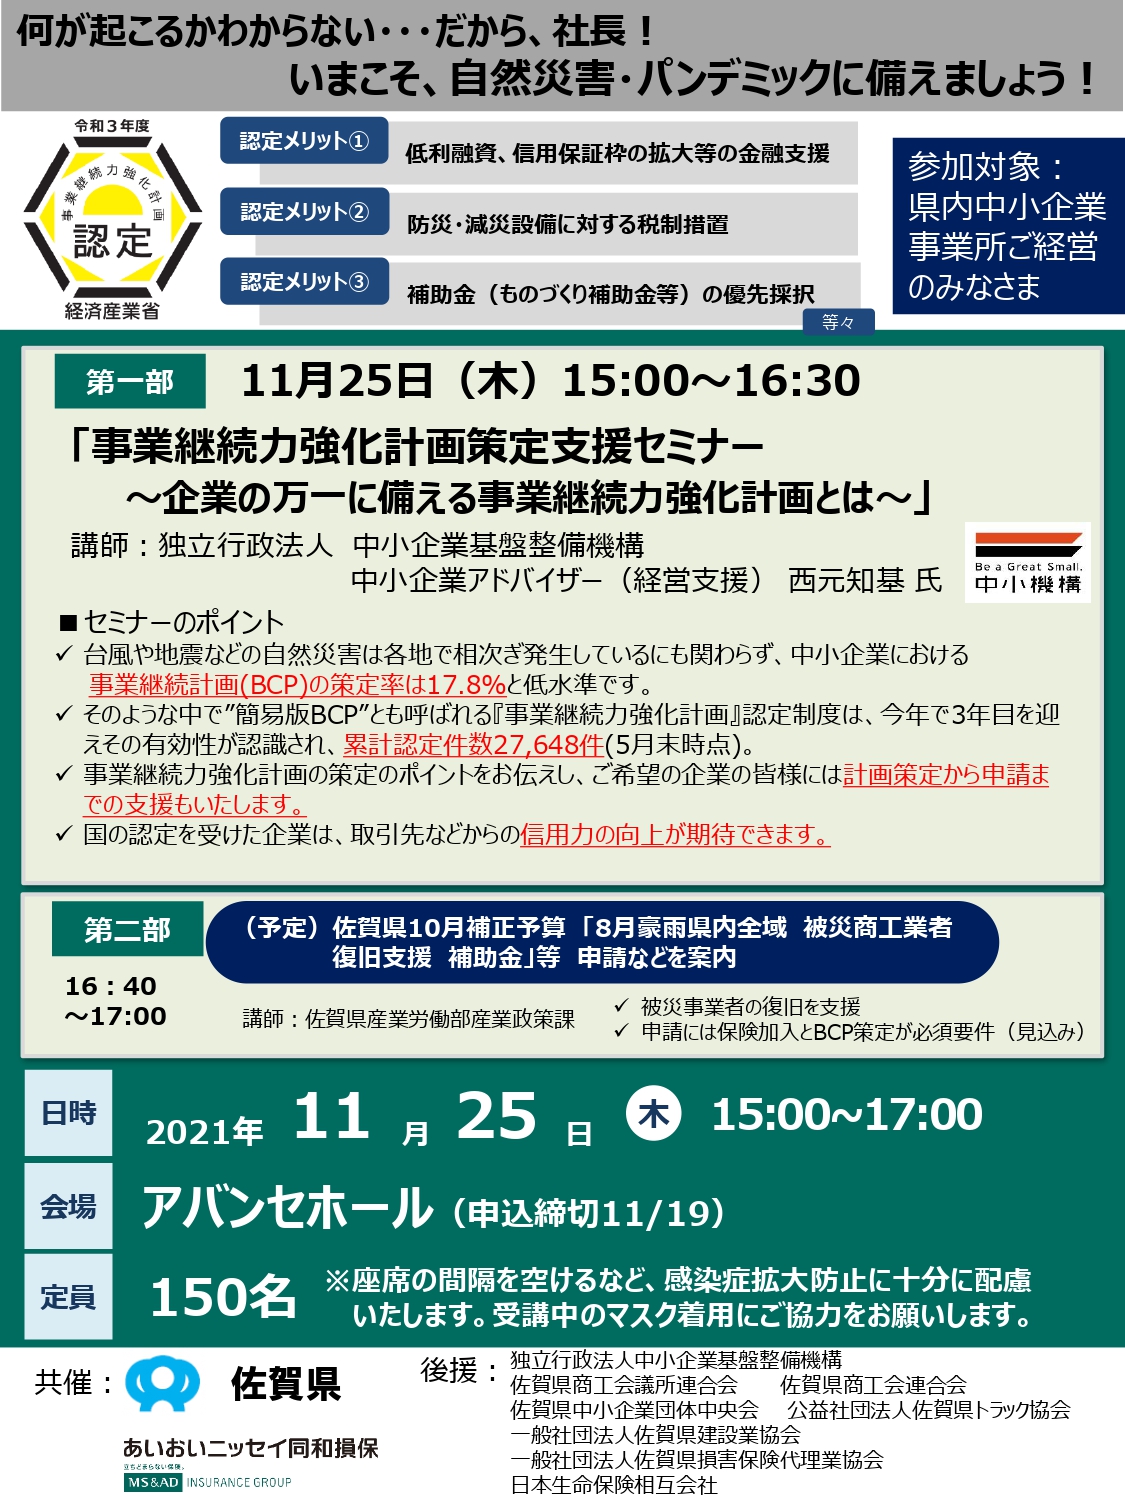 【11月19日】「事業継続力強化計画策定支援セミナー」の開催について